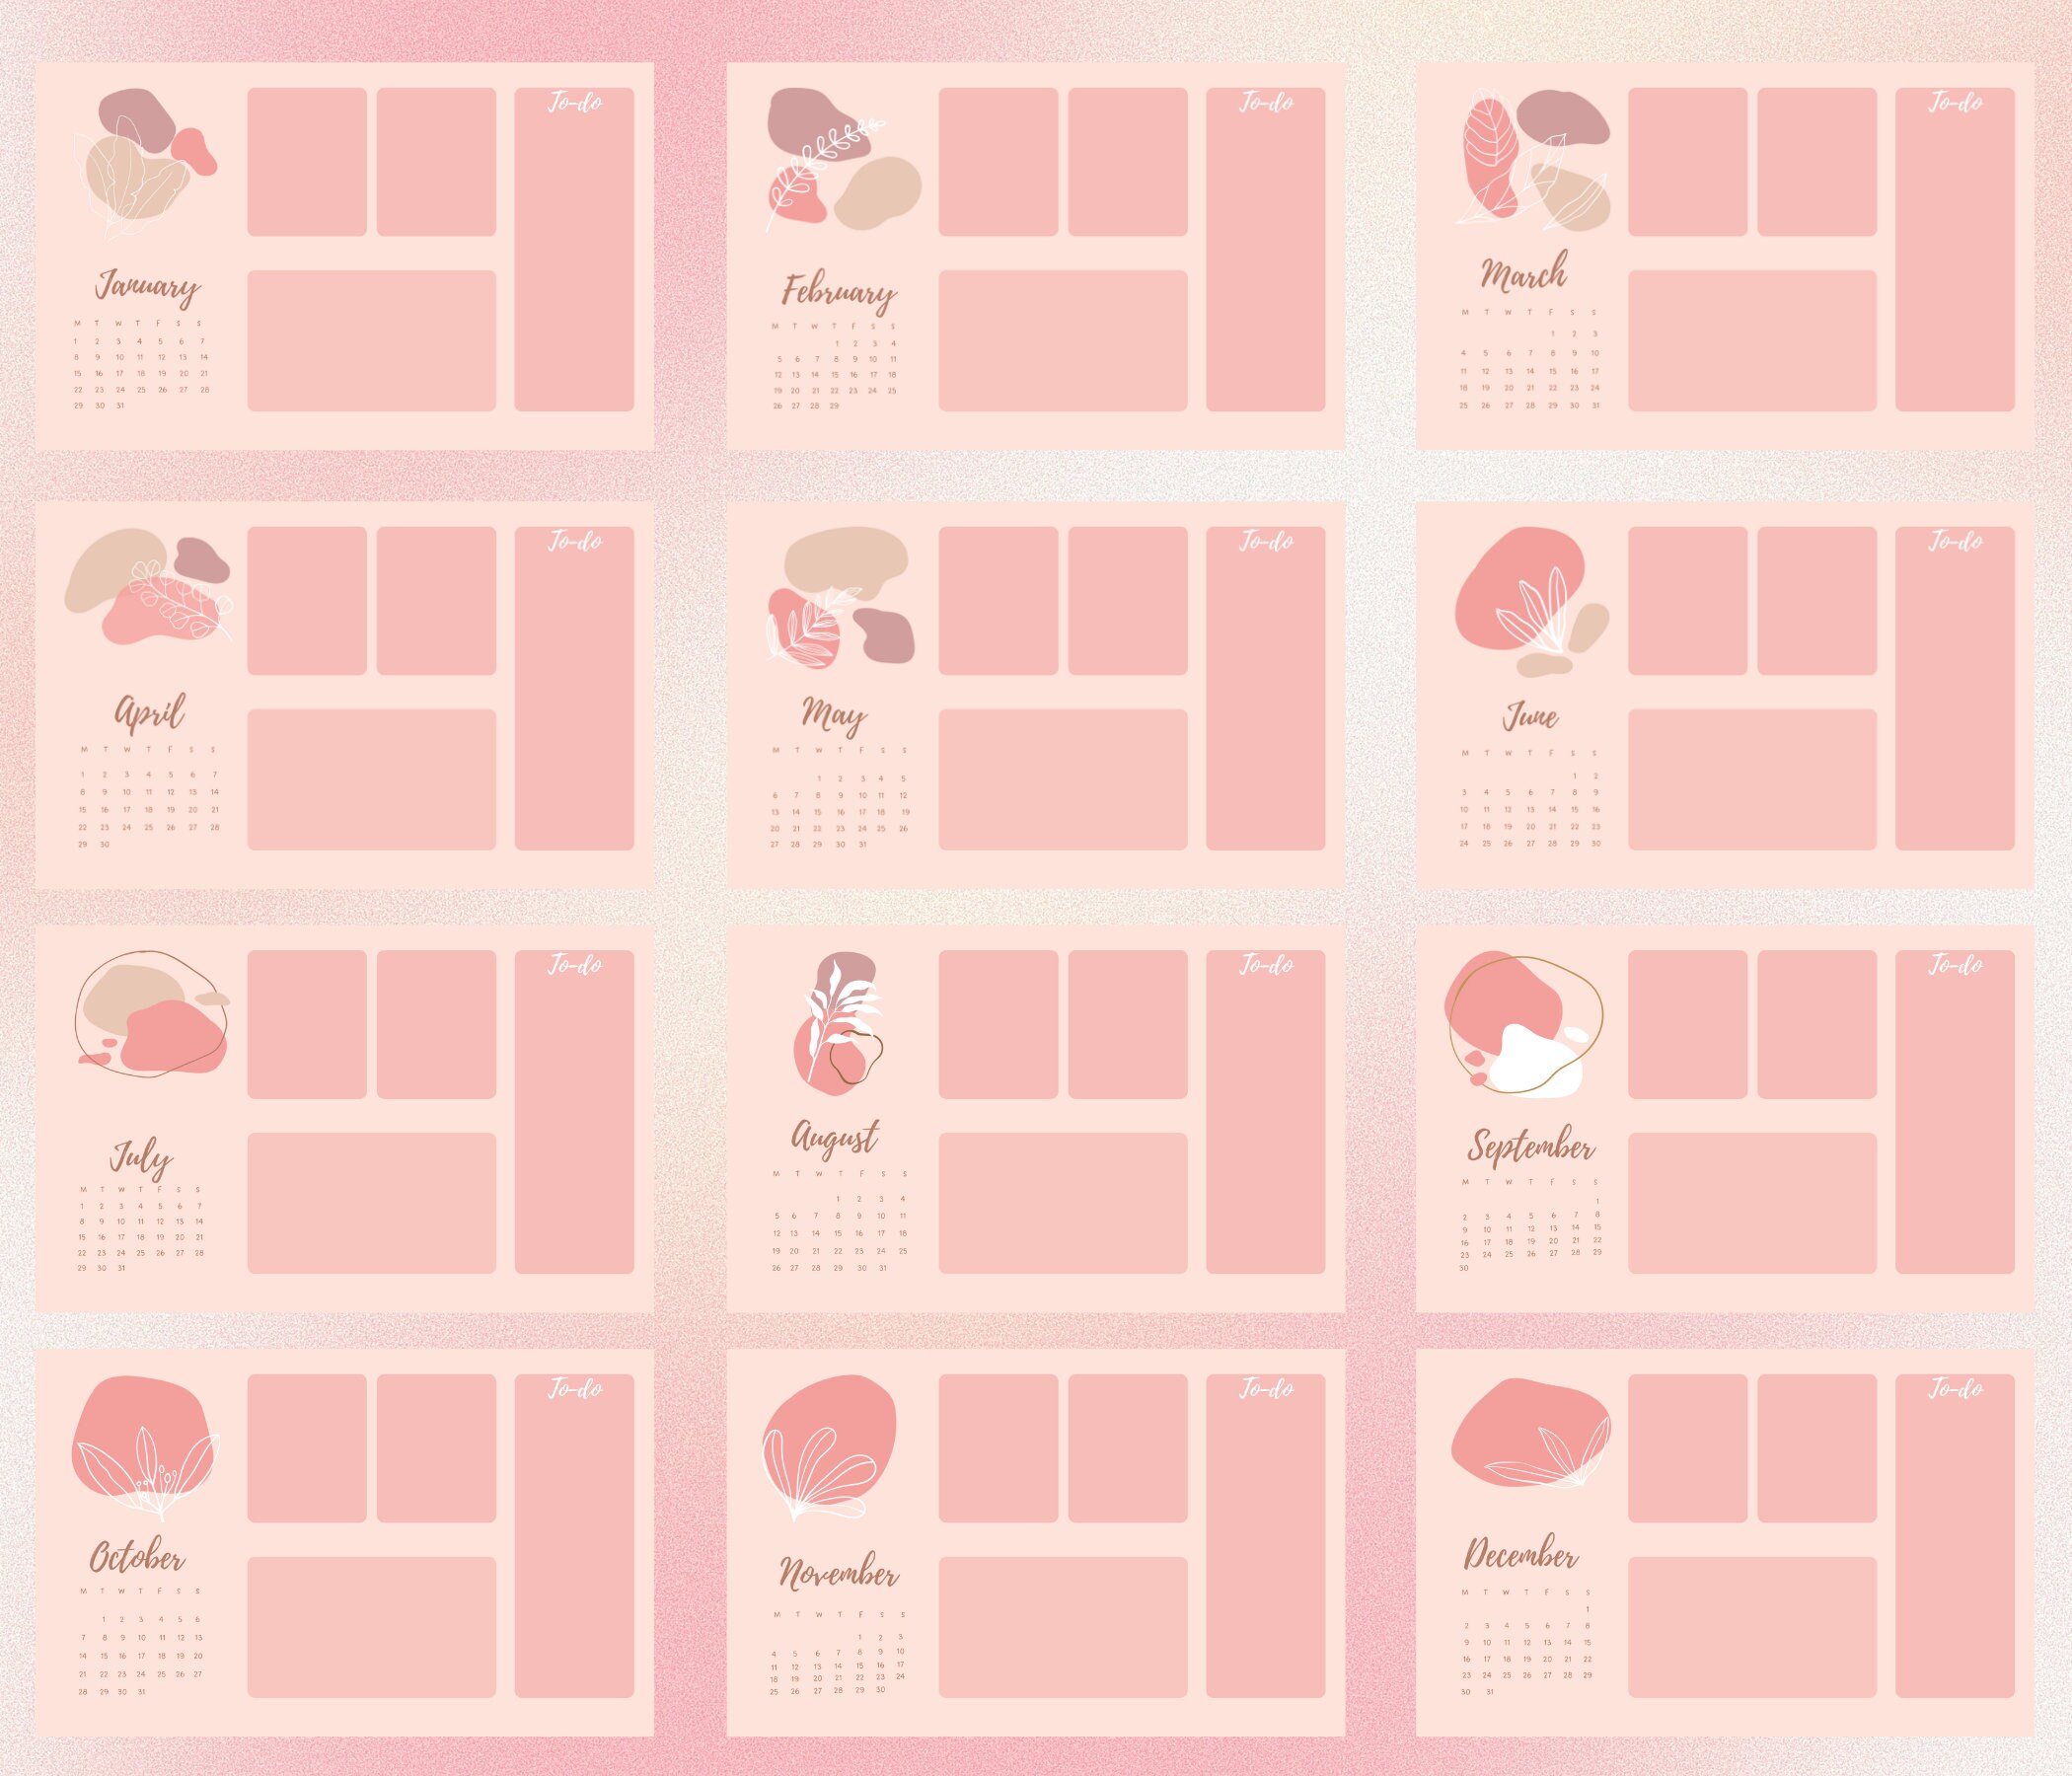 Pink Desktop Wallpaper Organizer with Calendar (1508034)